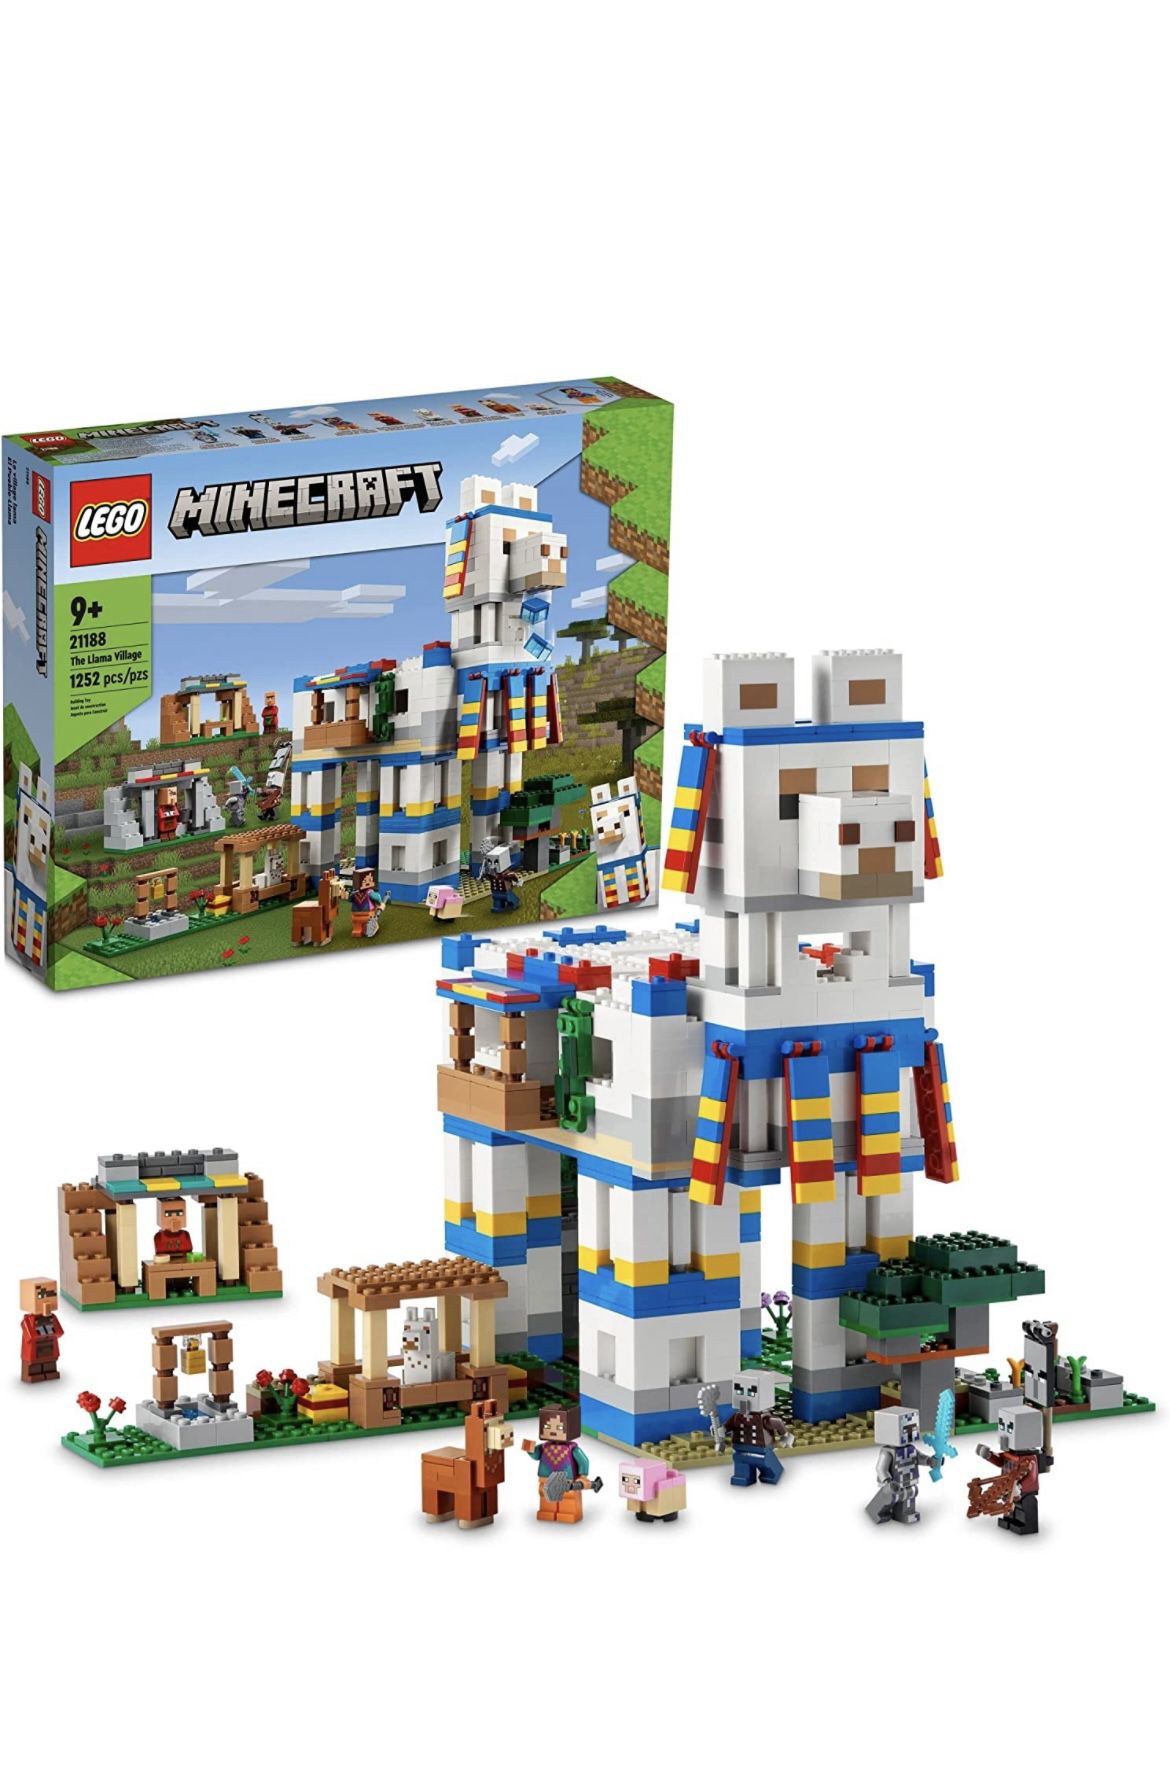 Lego Minecraft Llama Village New In Box